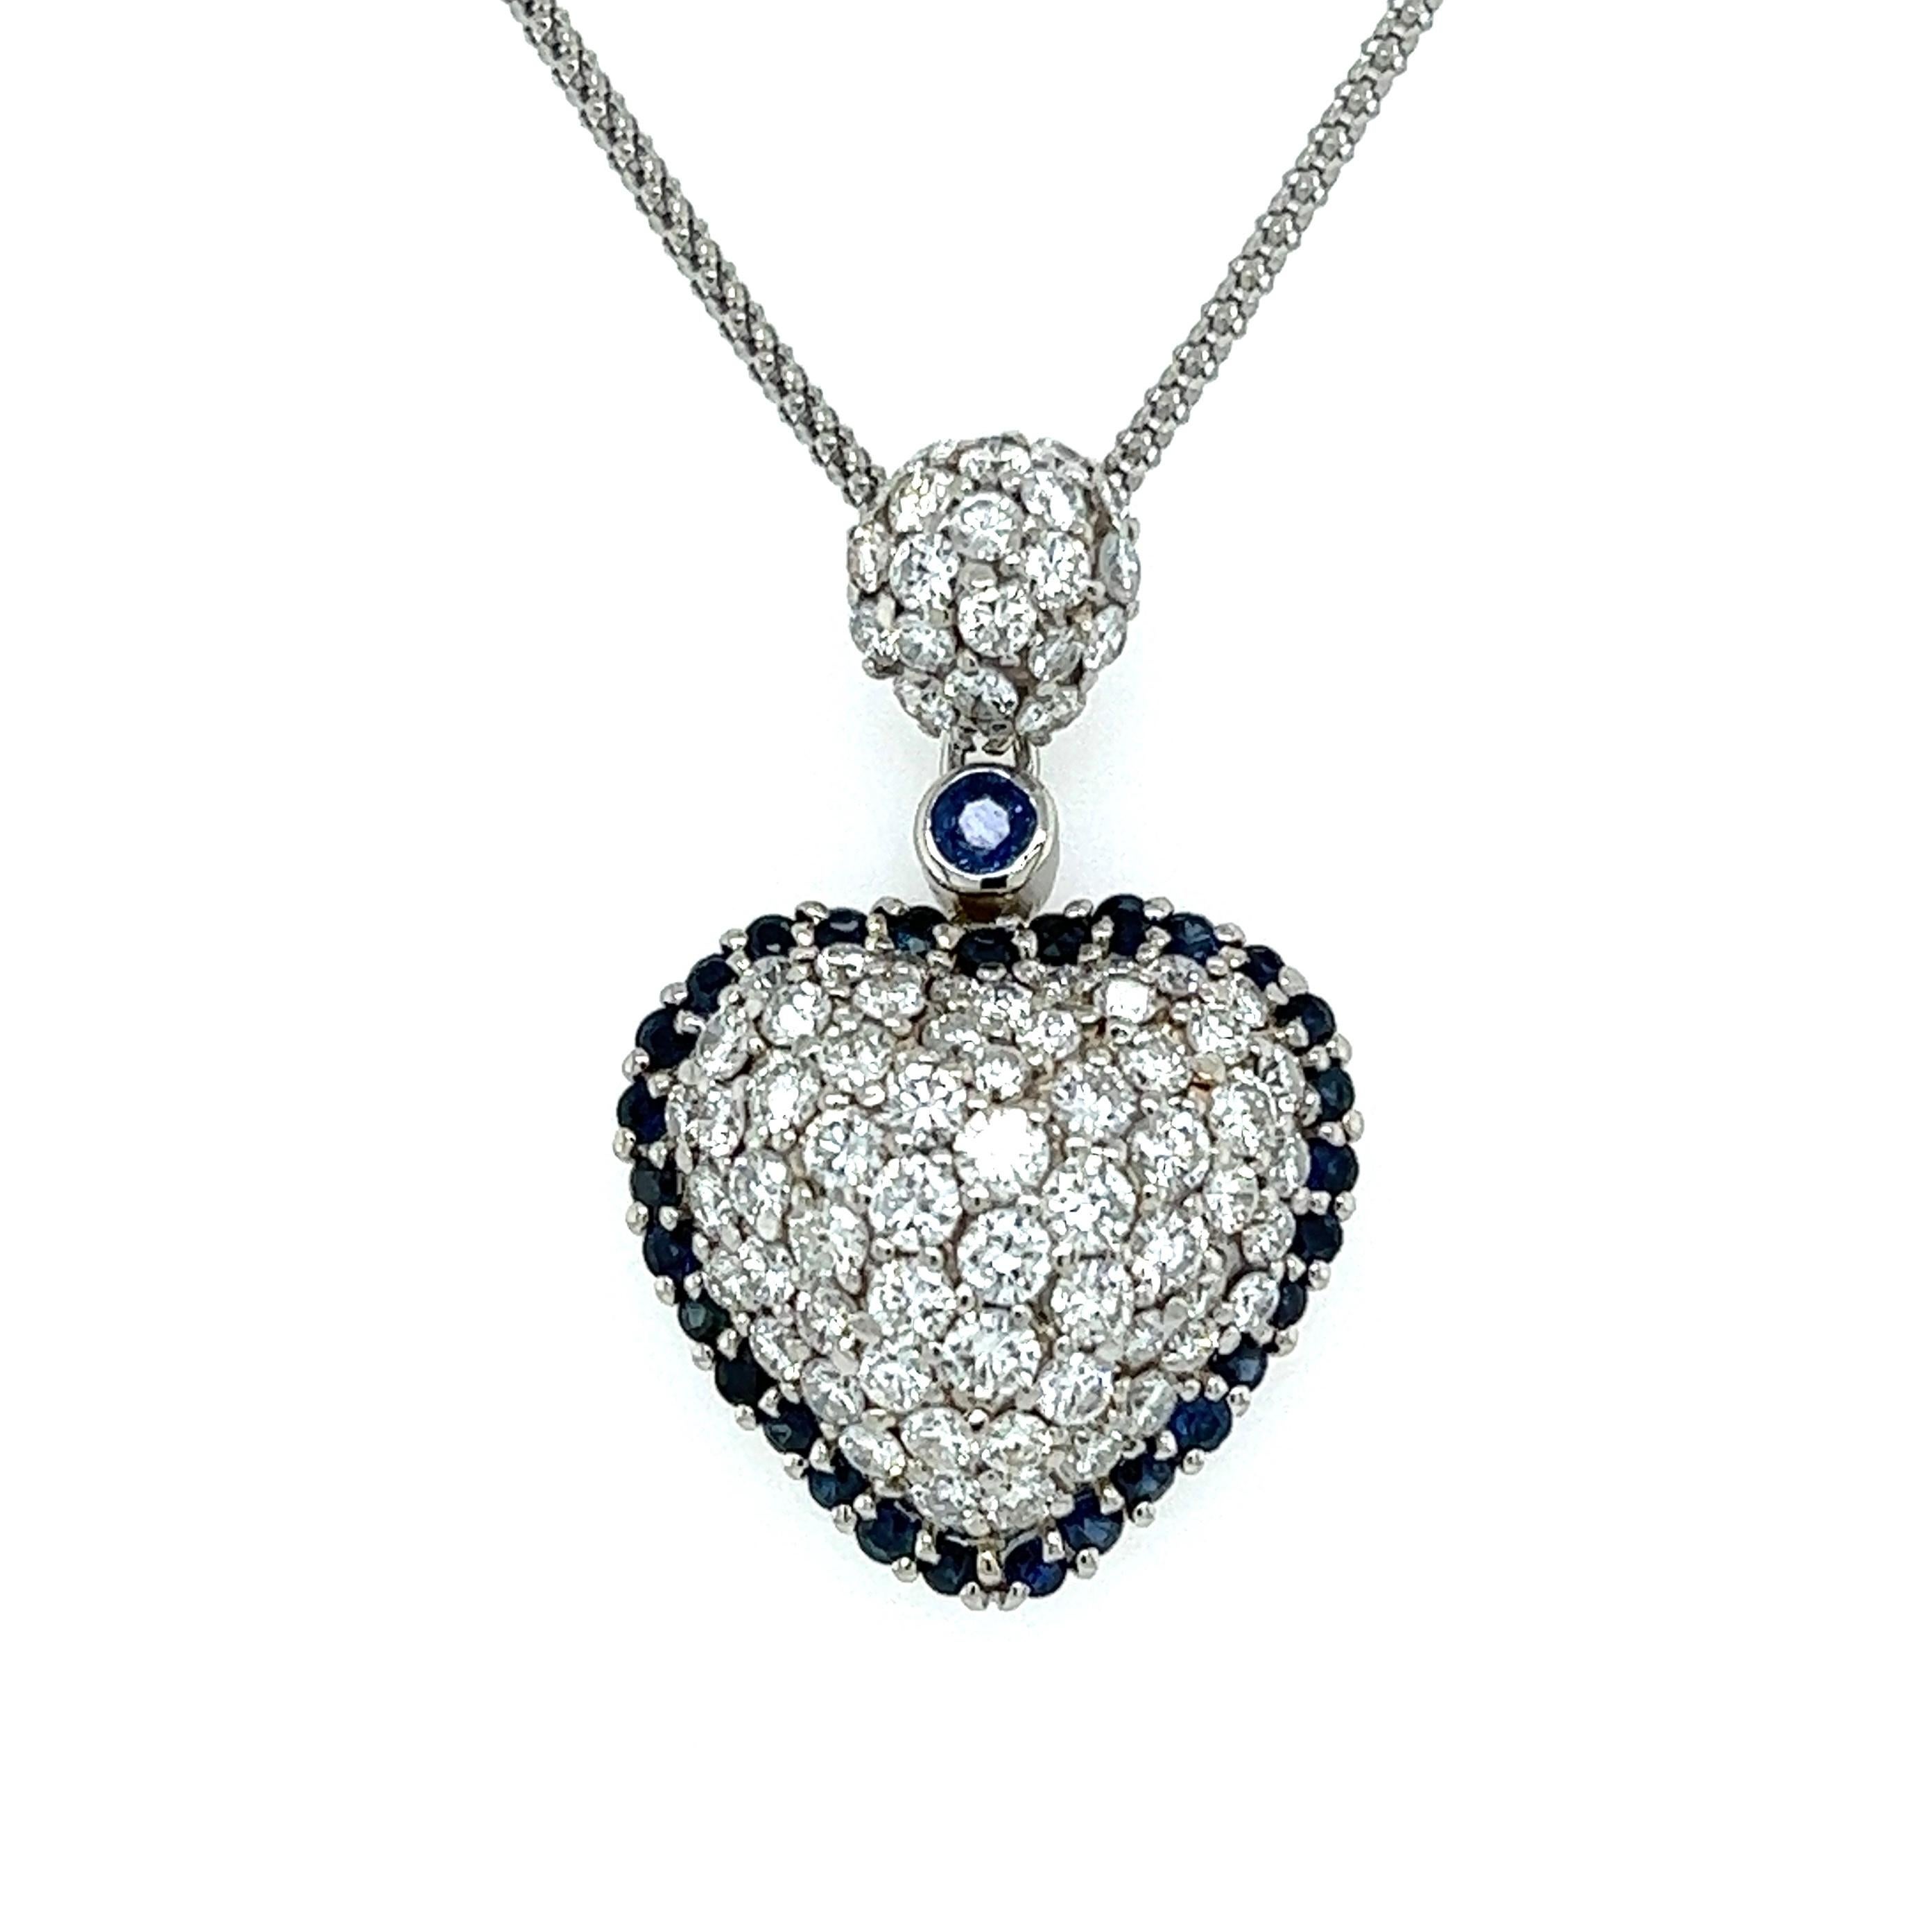 Einfach schön! Fein detaillierte Diamant und Saphir Halo Herz Platin Anhänger Halskette. Zentrierung Pave Hand gesetzt Diamanten, mit einem Gewicht von ca. 2,65 tcw, umgeben von blauen Saphiren, ca. 0,95 tcw. Größe des Anhängers: 1,25